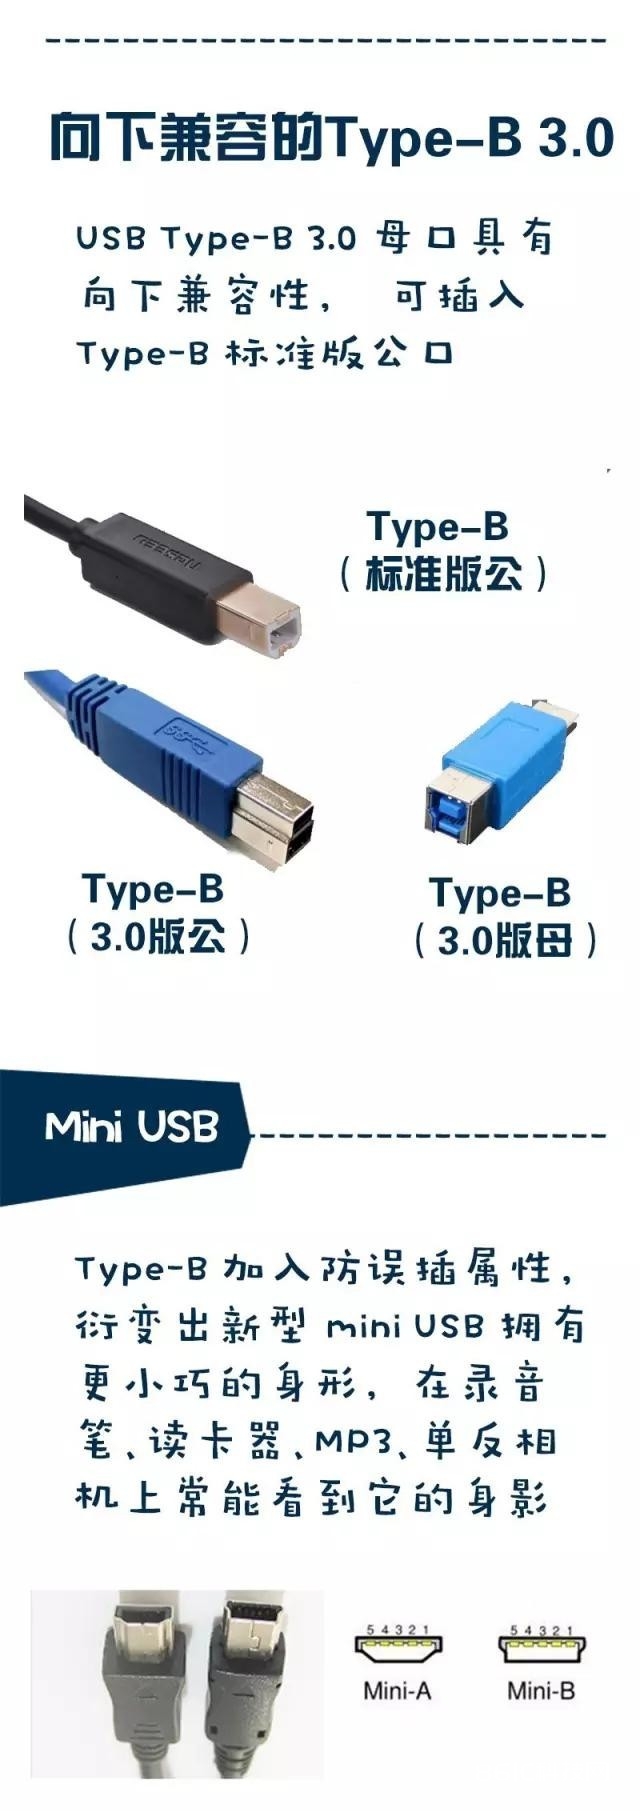 了解又生疏 USB接口标准全解析